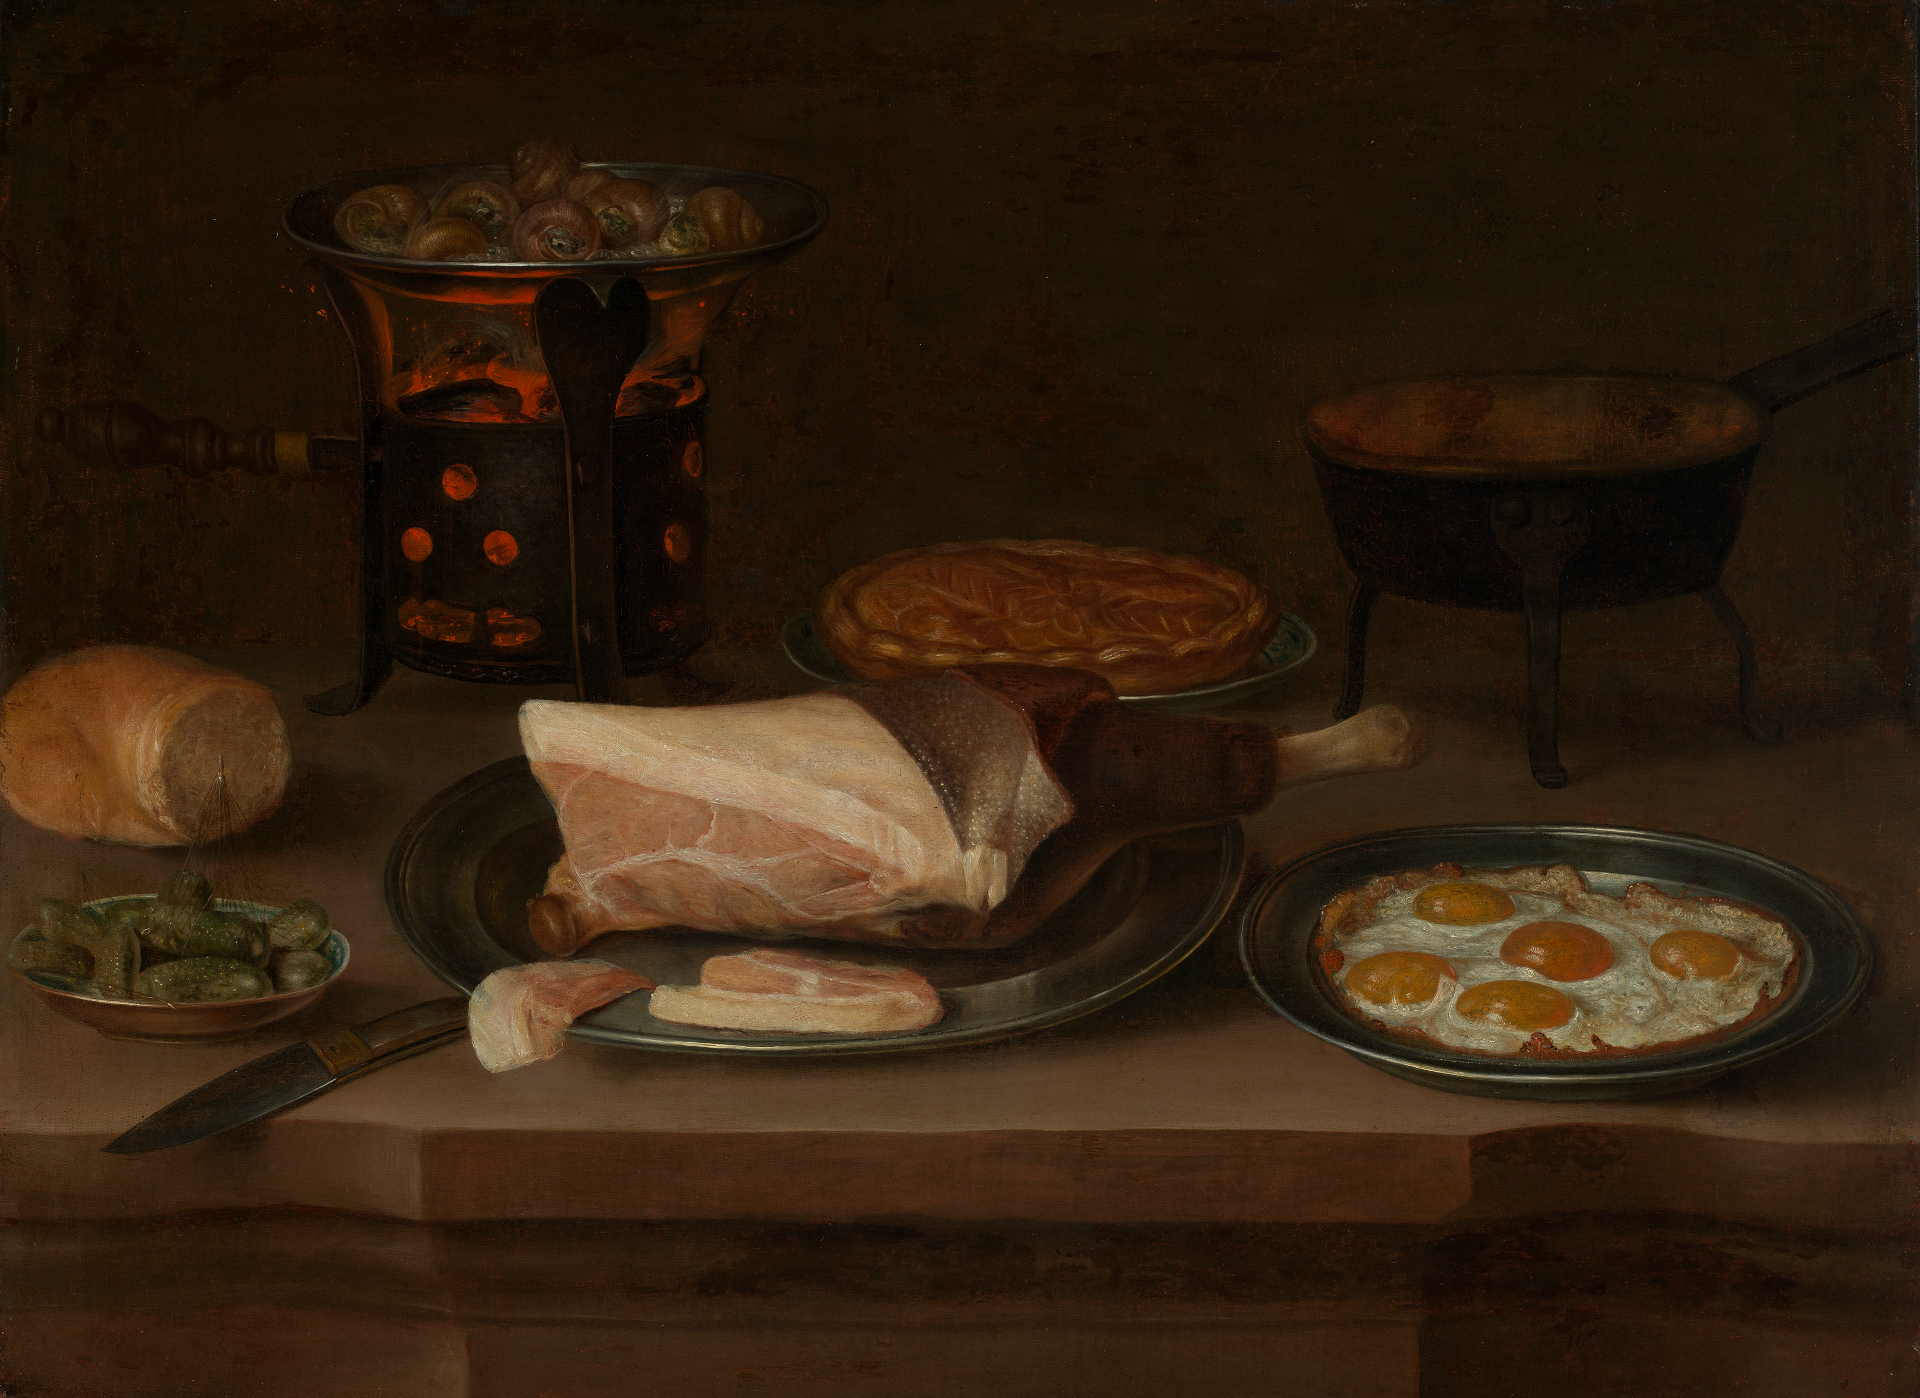 Frühstücksstilleben mit Schinken Spiegeleiern und Schnecken. Die genannten Lebensmittel stehen auf einem braunen Tisch. Der Hintergrund ist ebenfalls braun gehalten.